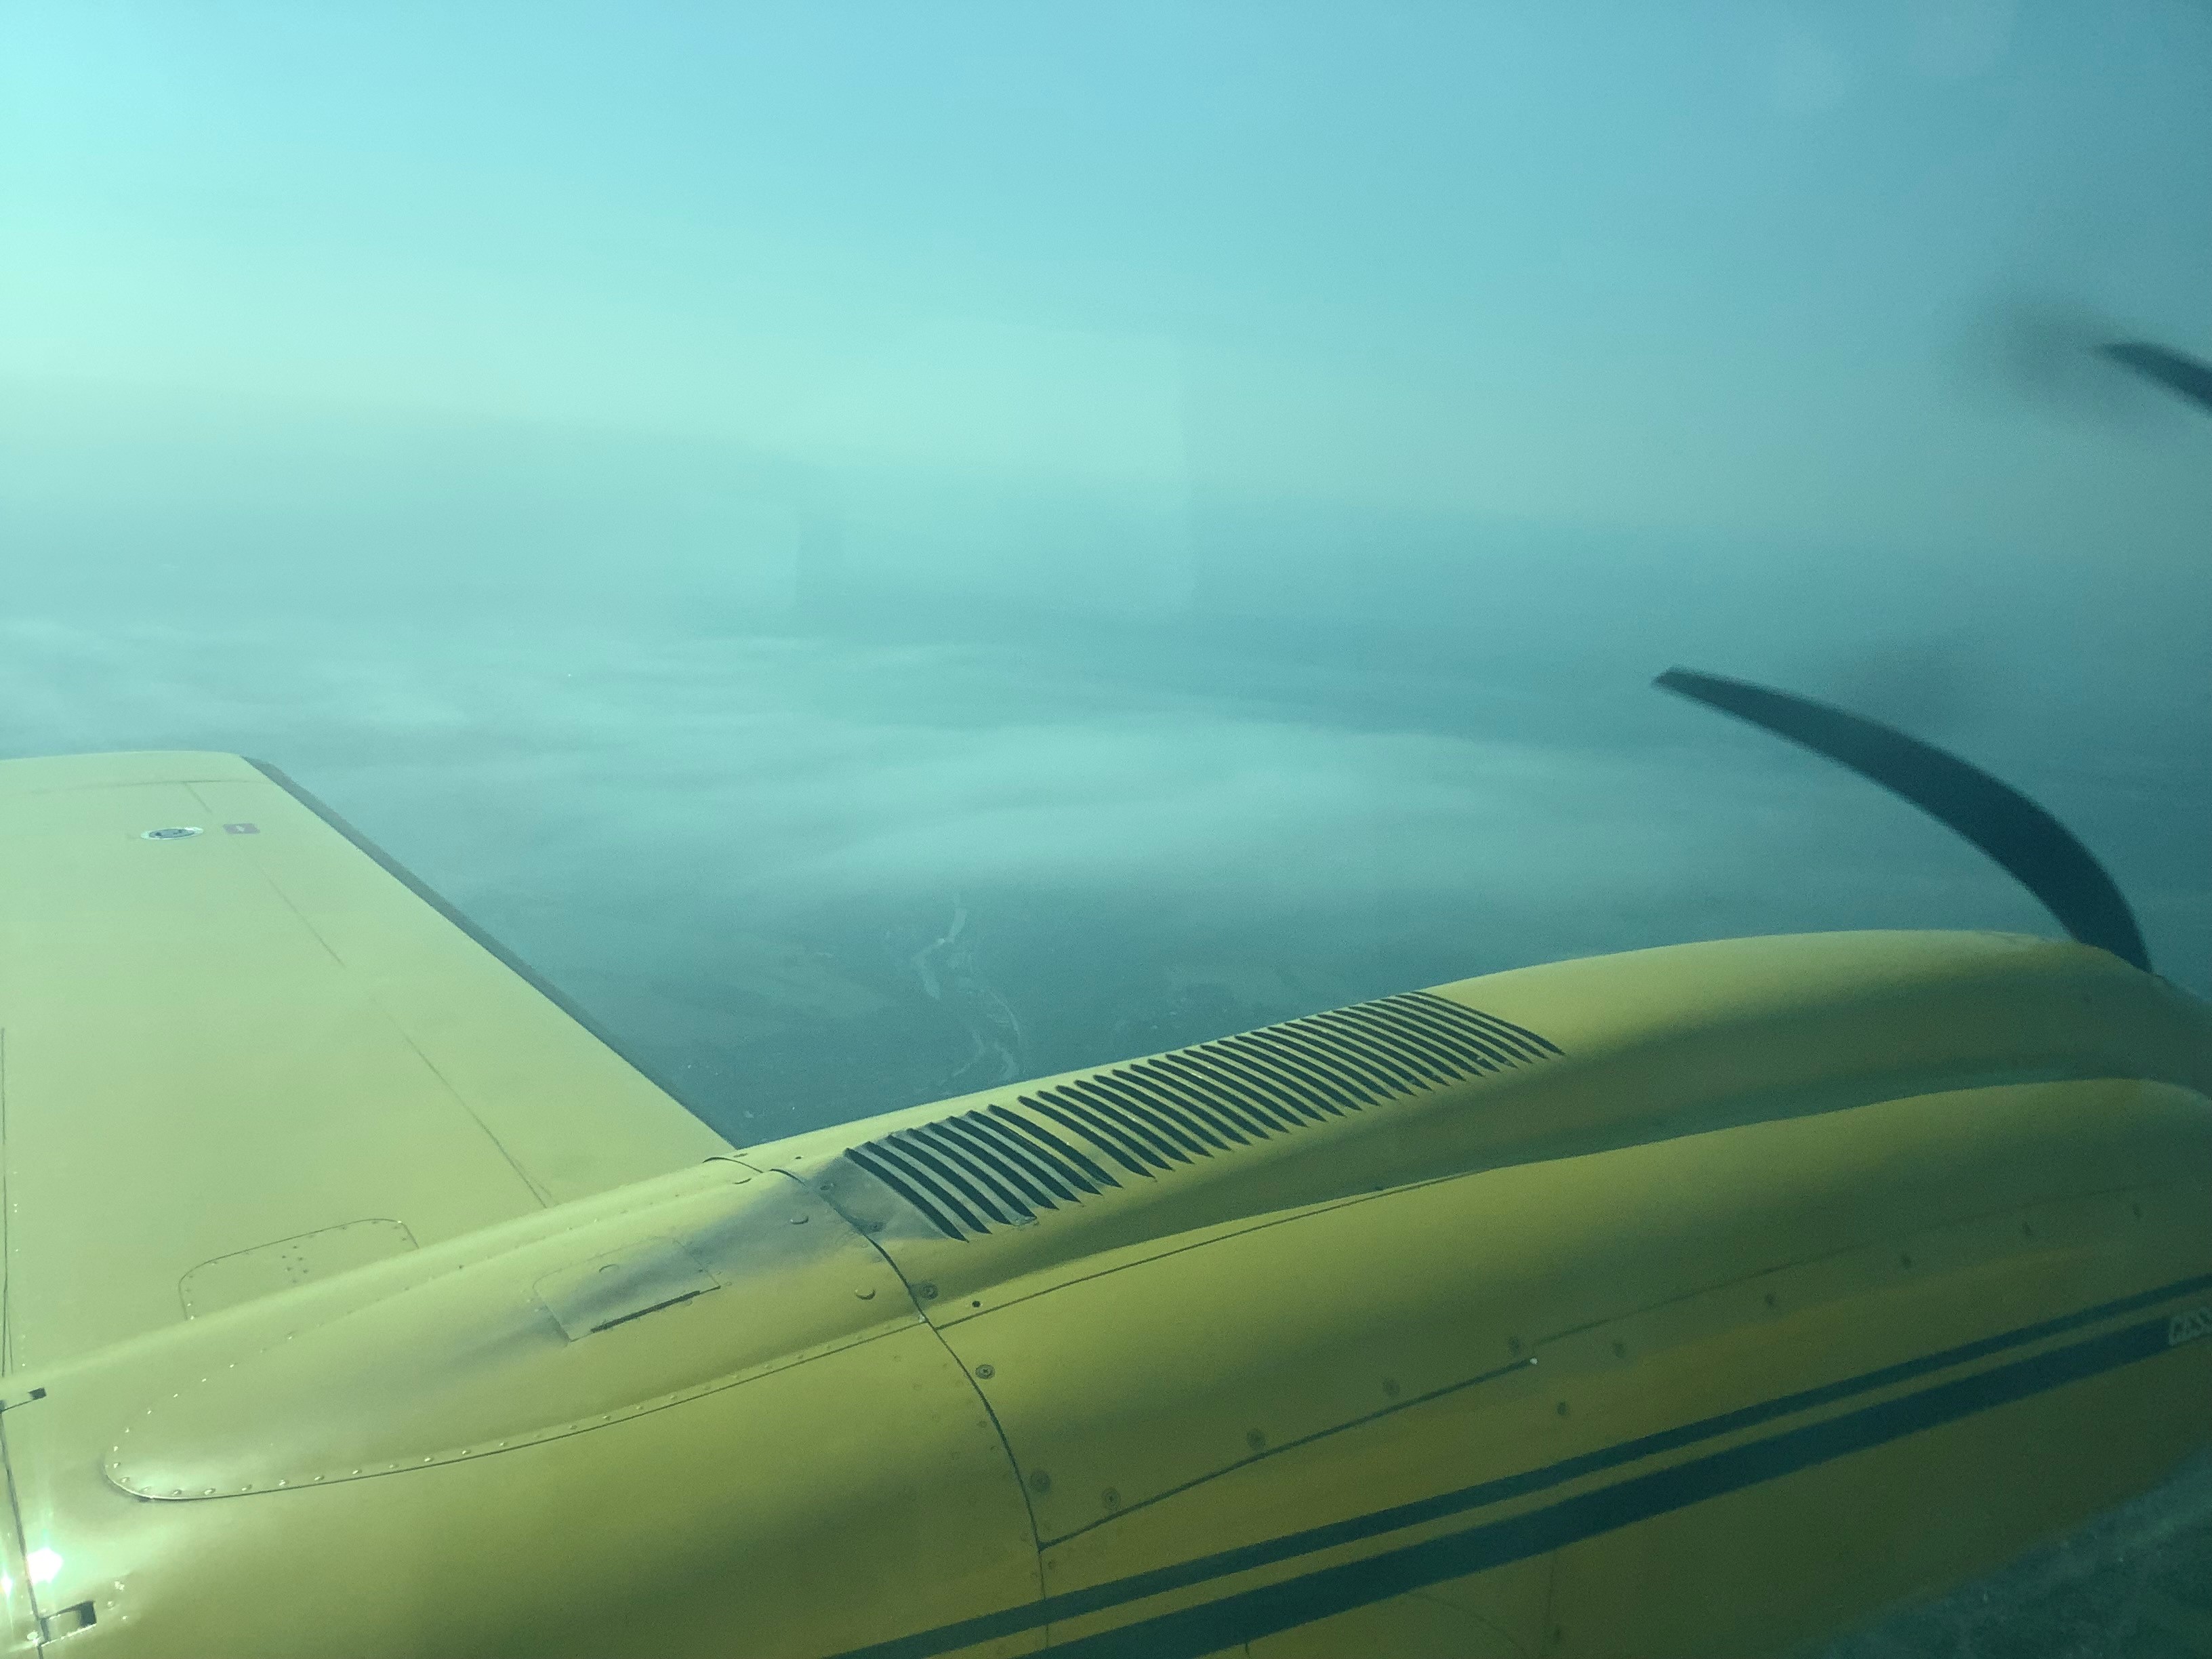 Vermessungsflugzeug von Hansa Luftbild über Belgien